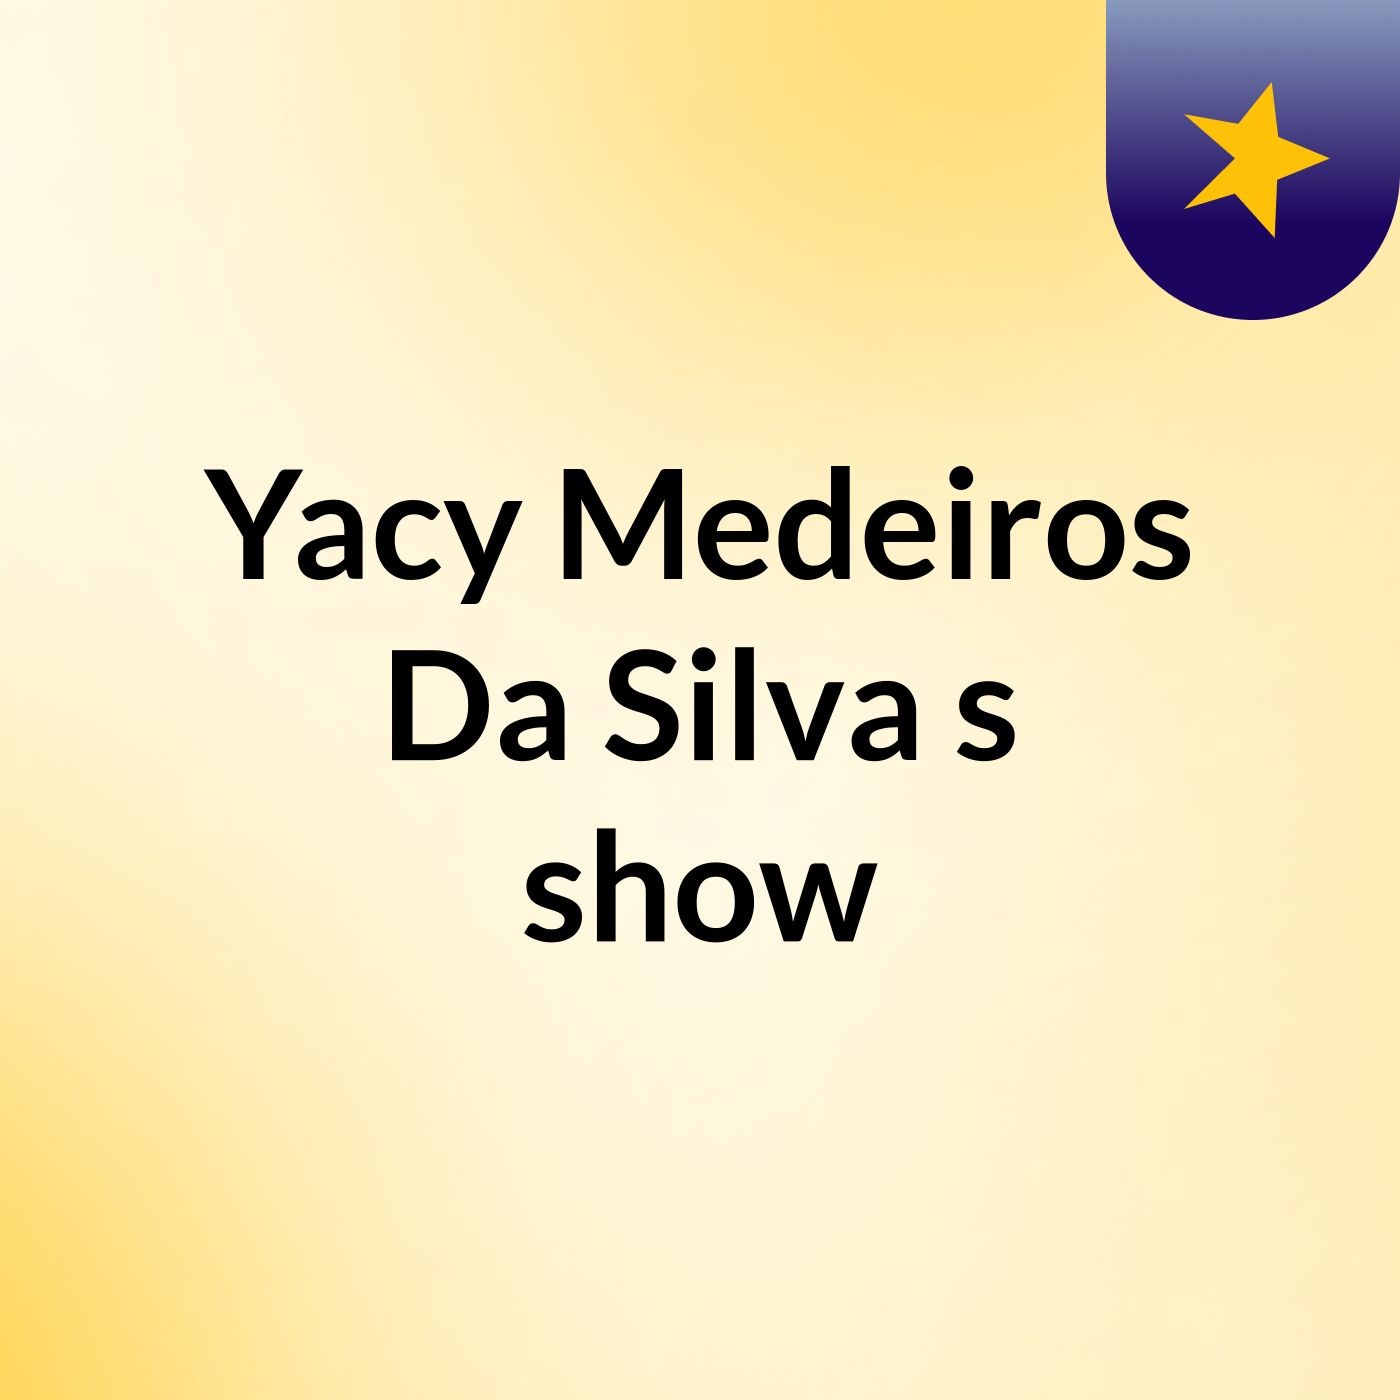 Episódio 6 - Yacy Medeiros Da Silva's show